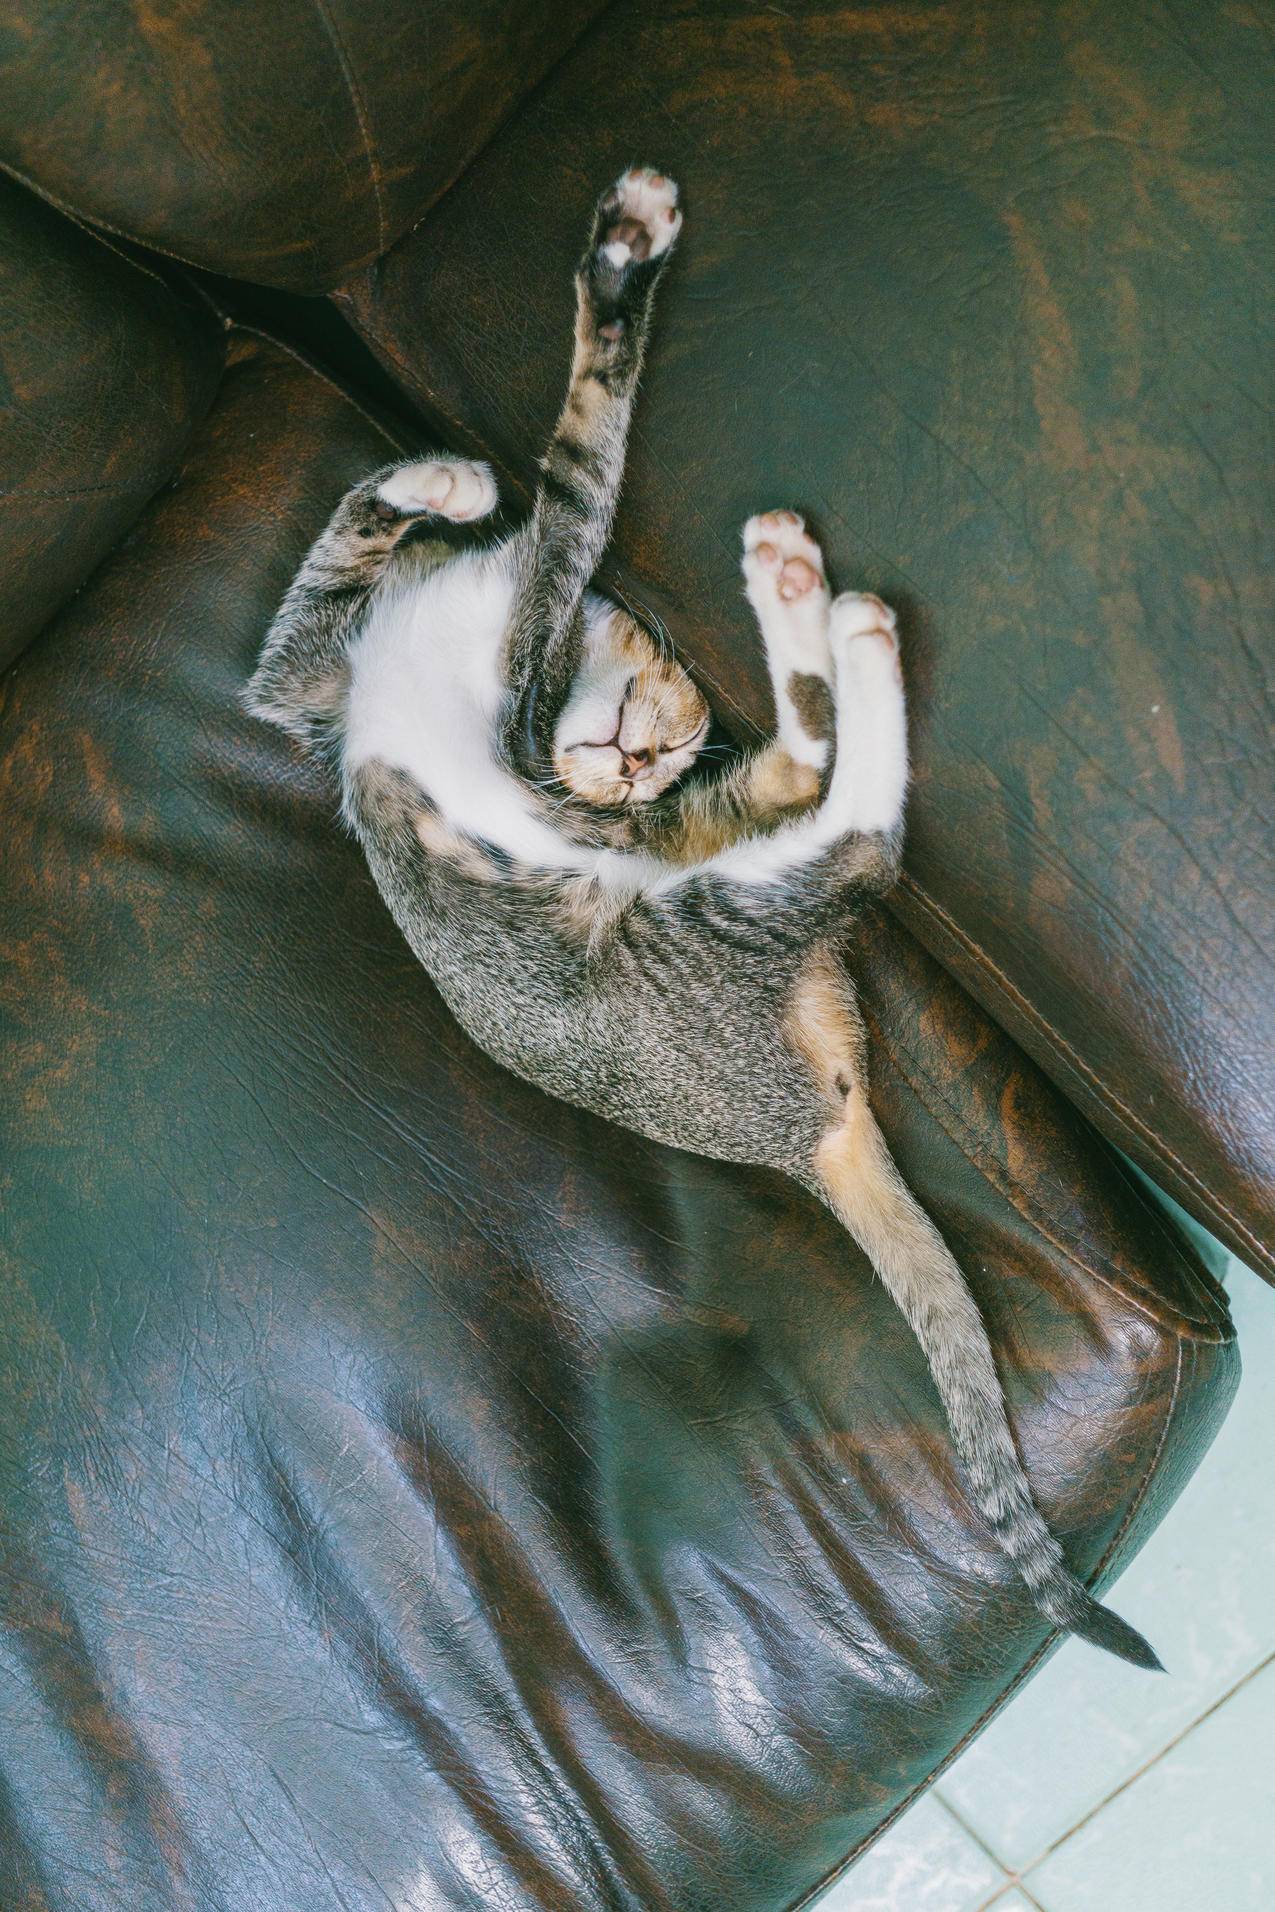 棕色斑纹猫躺在沙发上